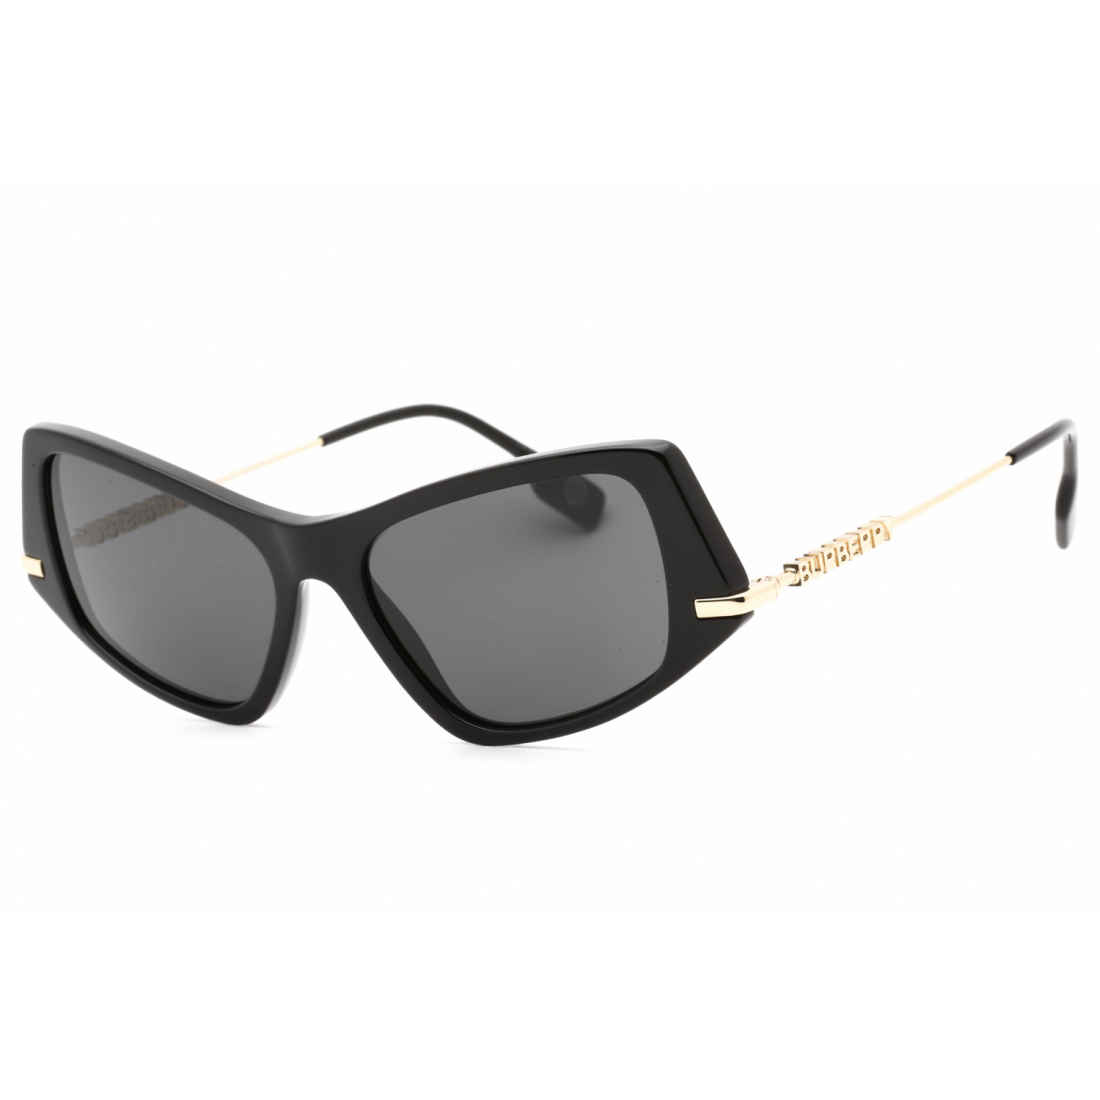 Women's '0BE4408' Sunglasses